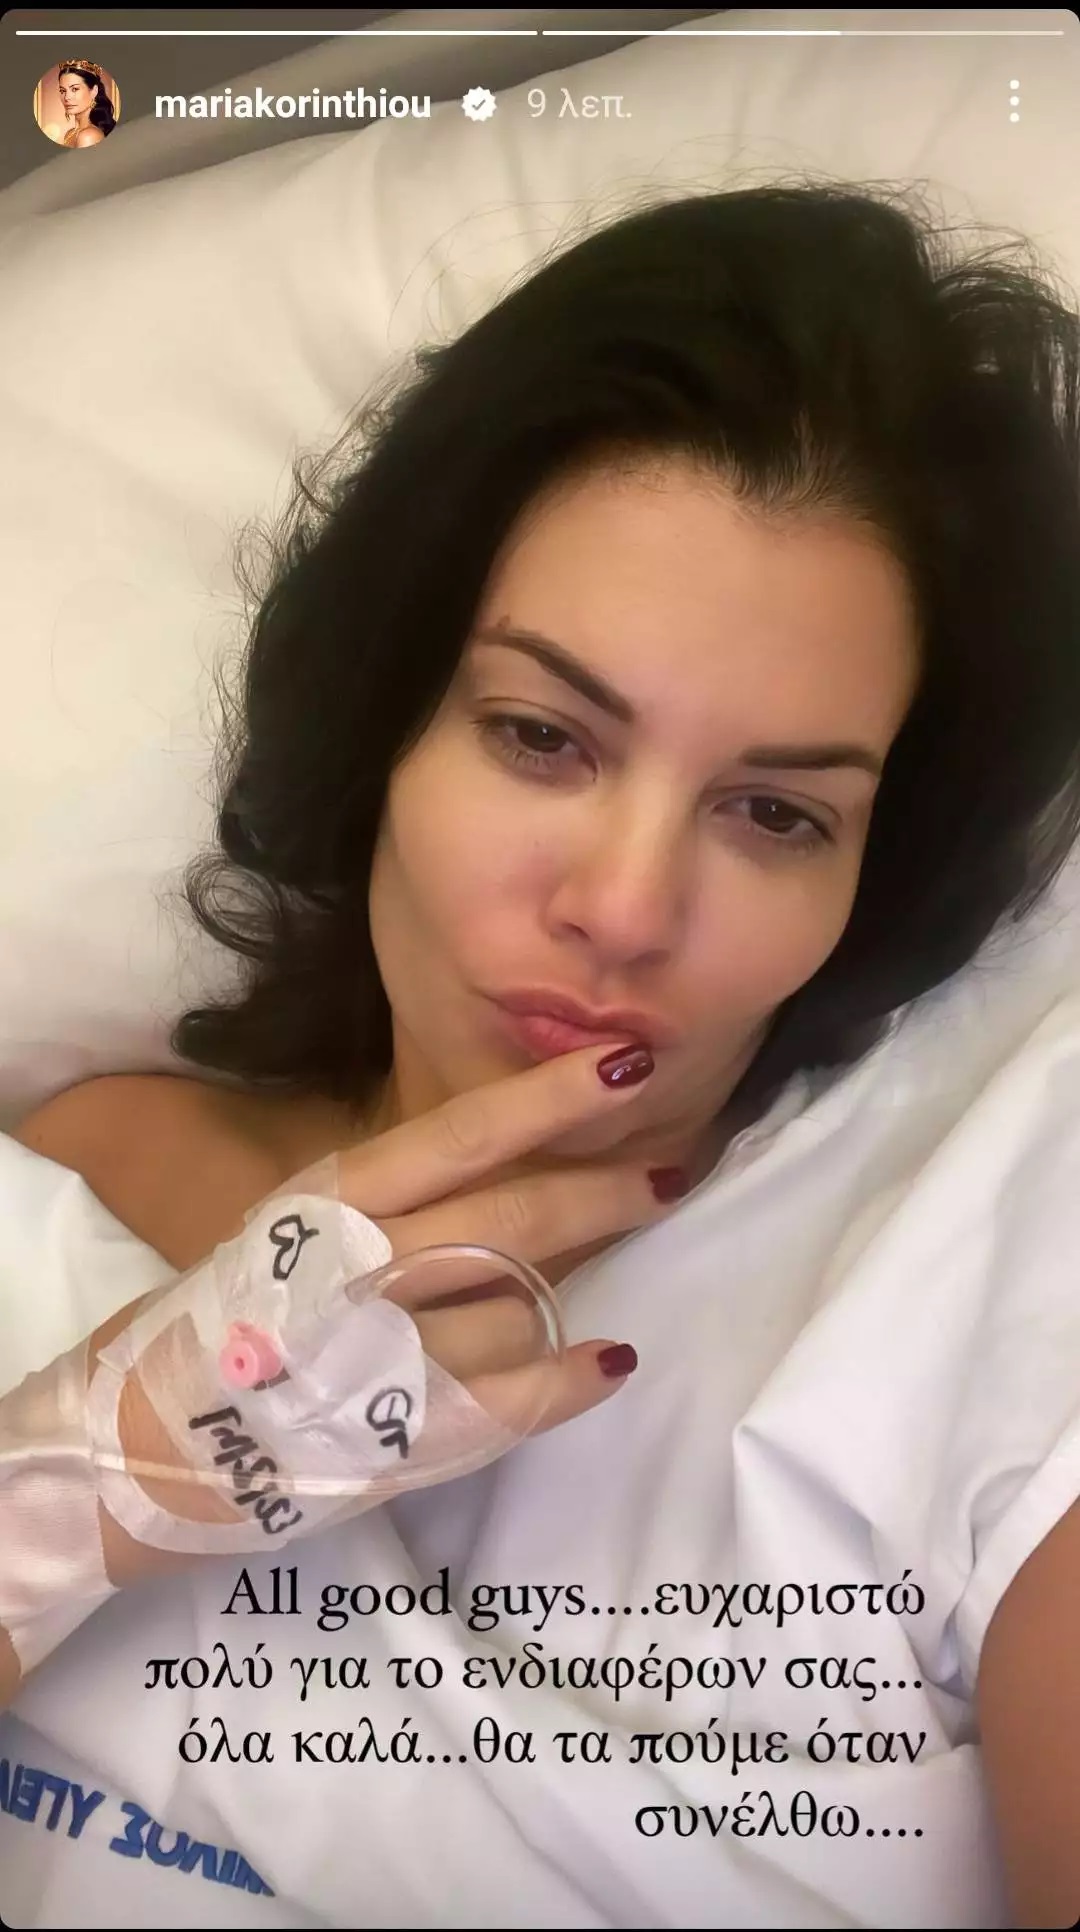 Μαρία Κορινθίου: Η ανάρτηση μέσα από το νοσοκομείο- «Θα τα πούμε όταν συνέλθω» (εικόνα)